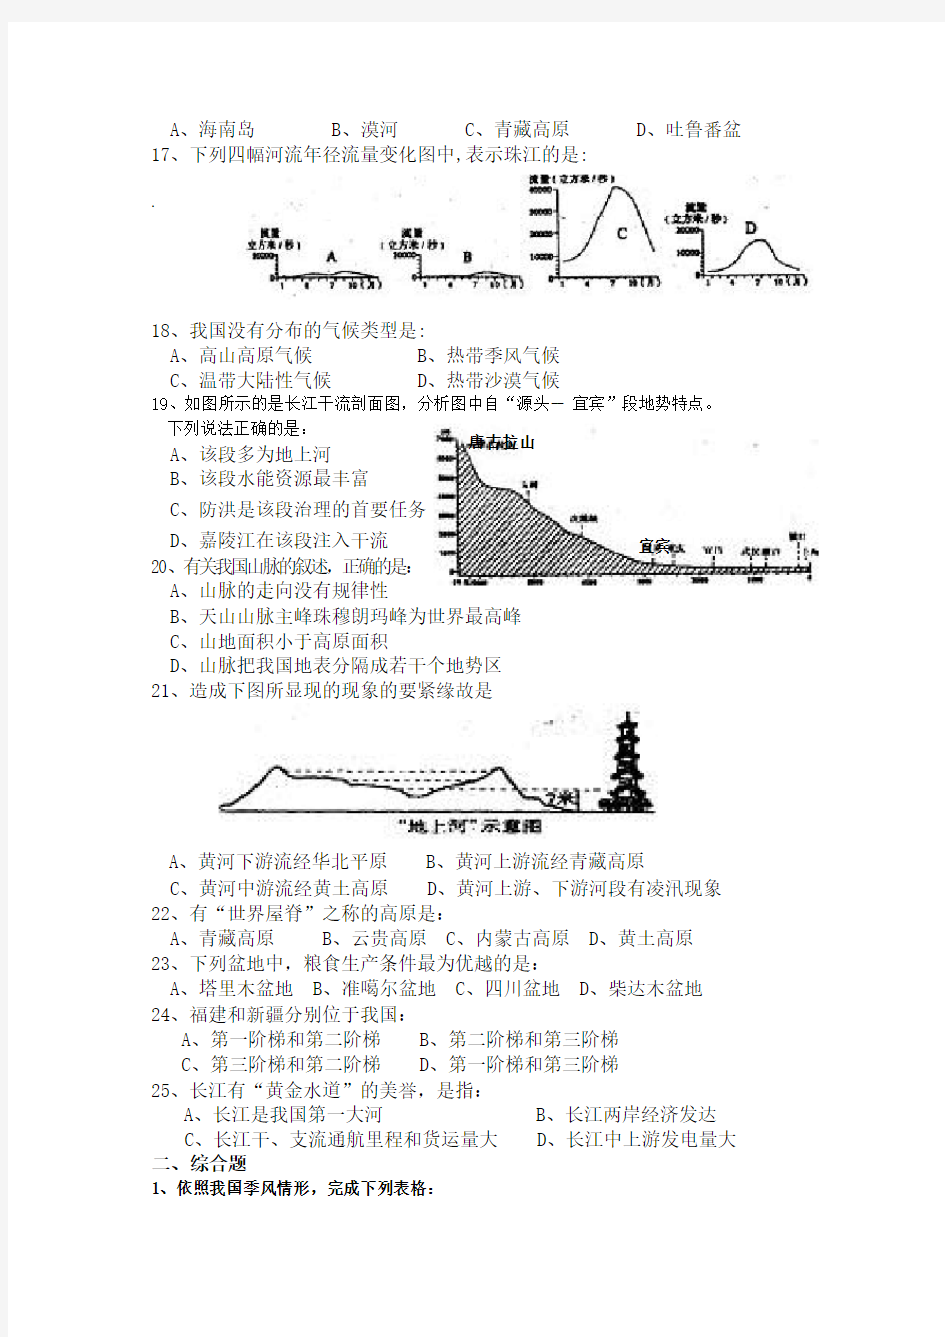 中国的自然环境测试